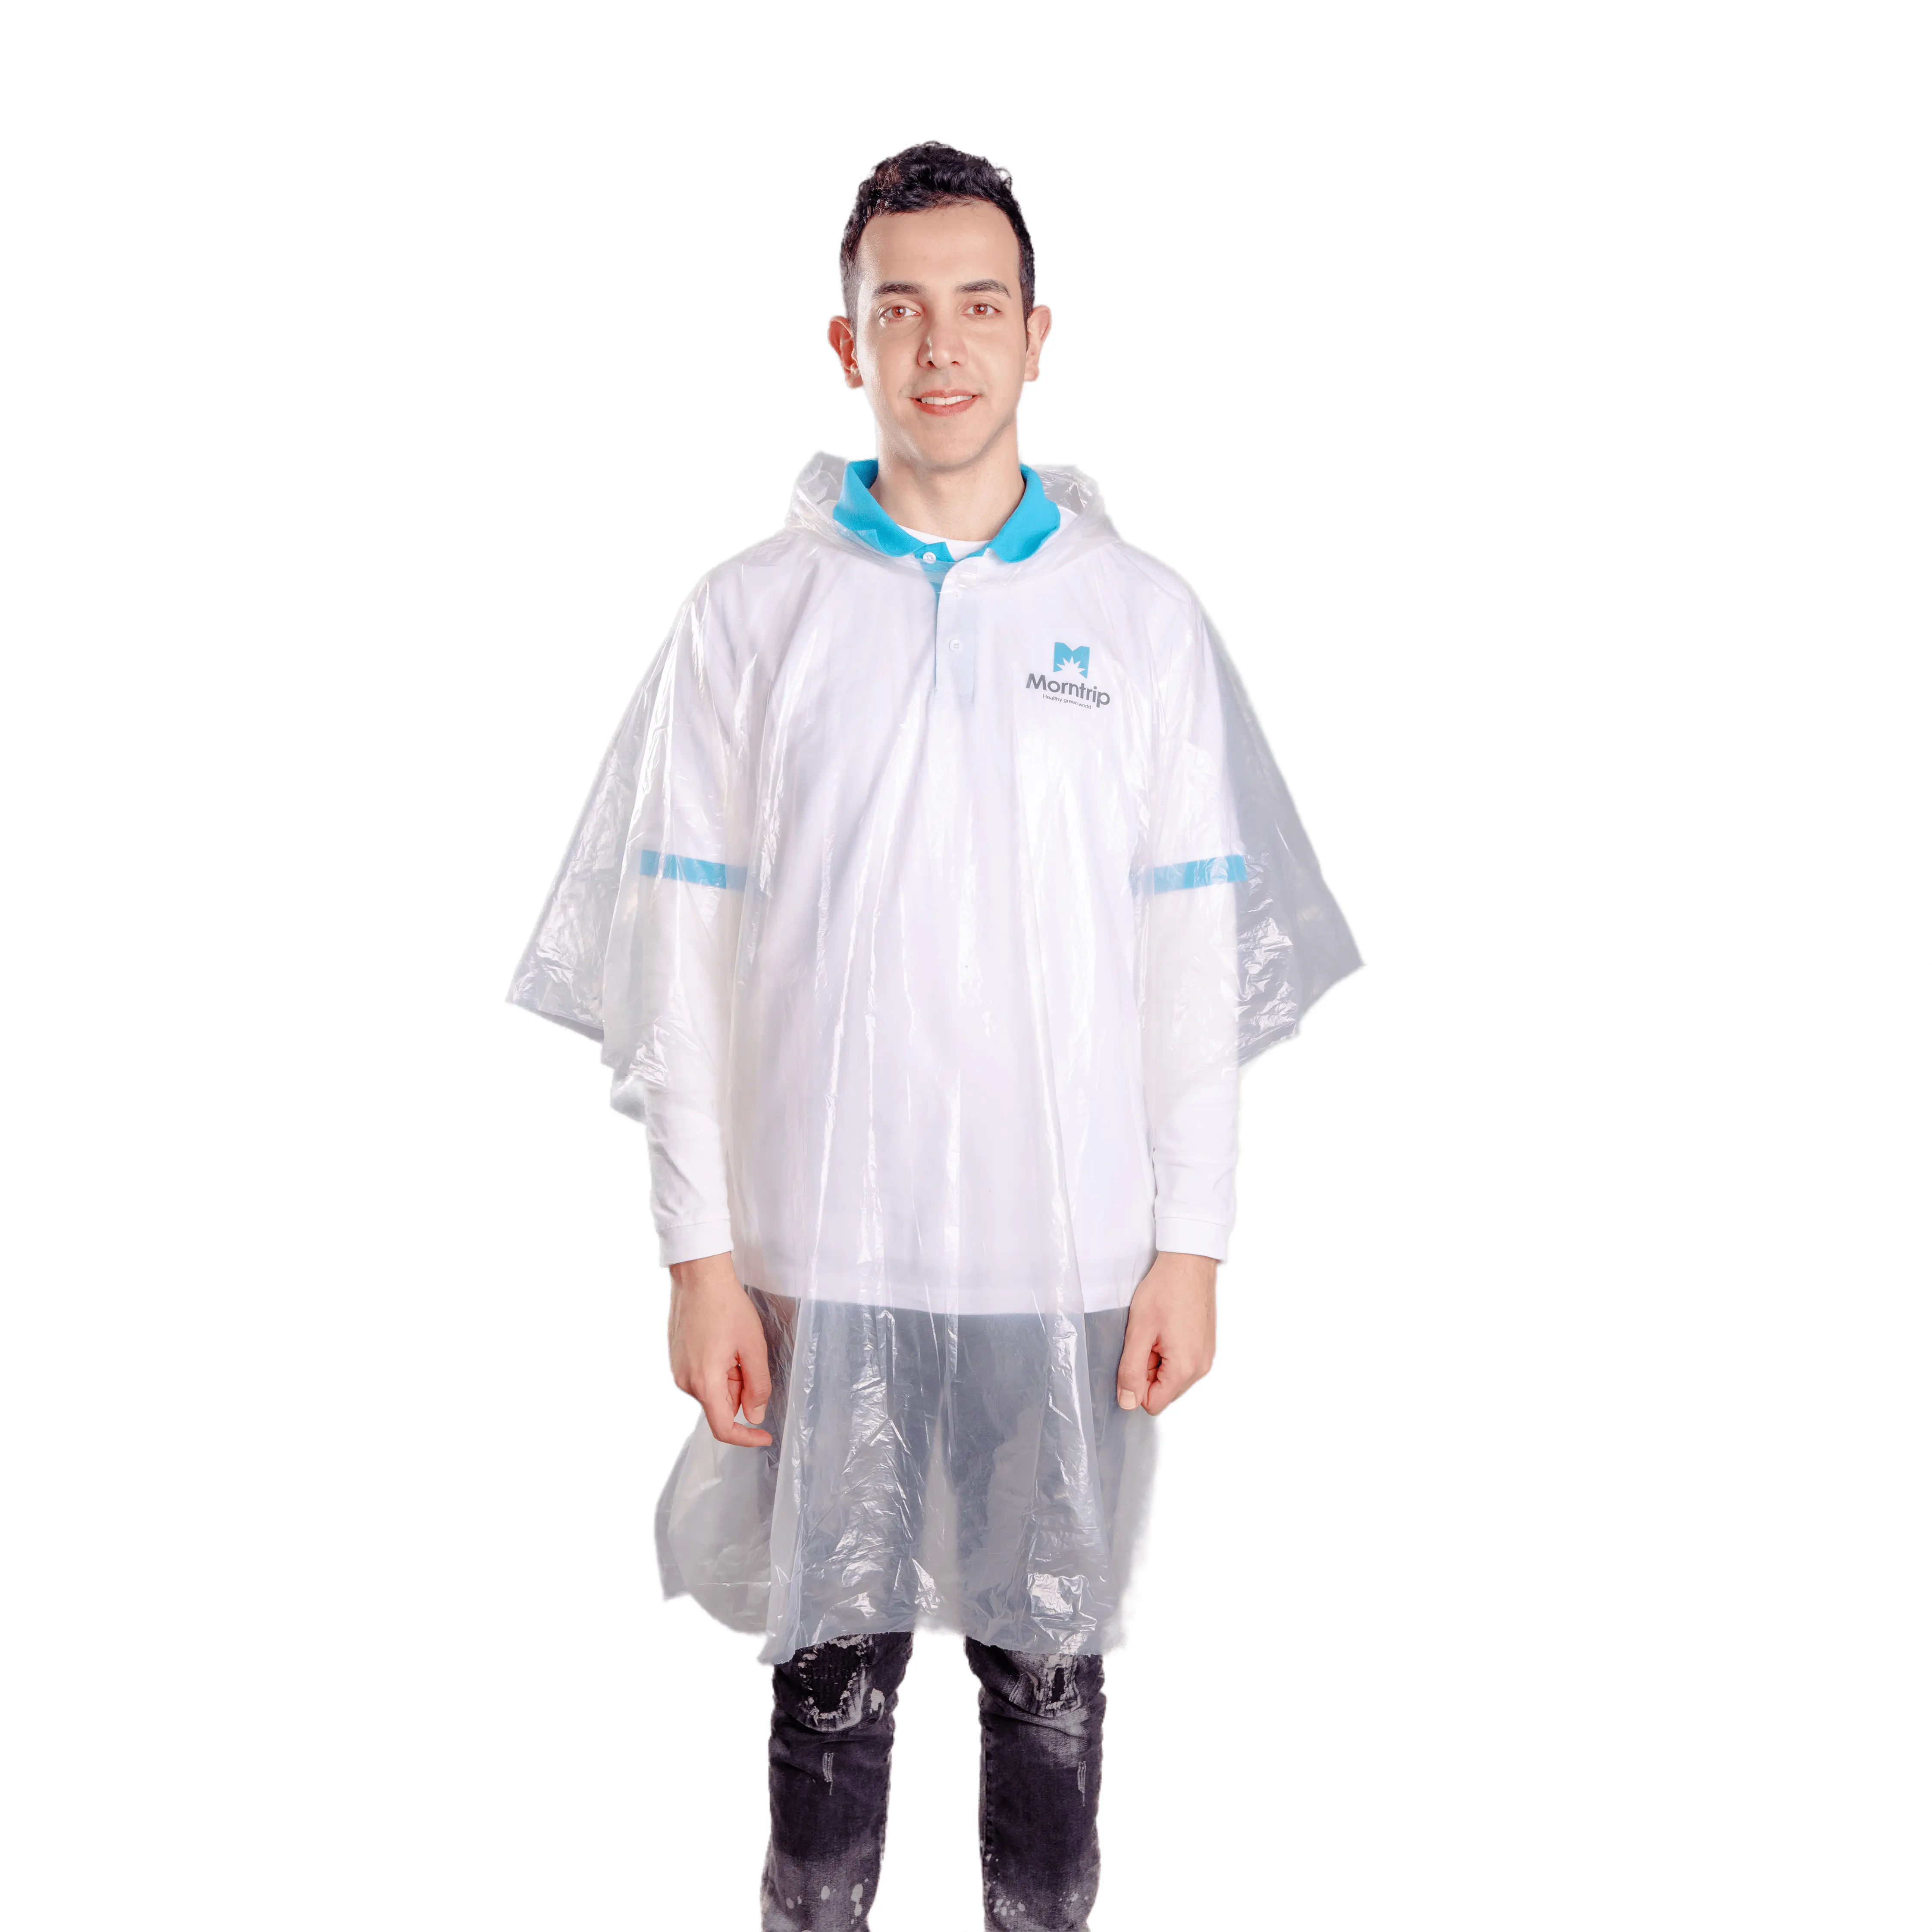 Morntrip เสื้อปอนโชฝนแบบใช้แล้วทิ้งสำหรับเด็กผู้ใหญ่,เสื้อกันฝนสีขาวสีเหลืองกันน้ำทนทานพลาสติก